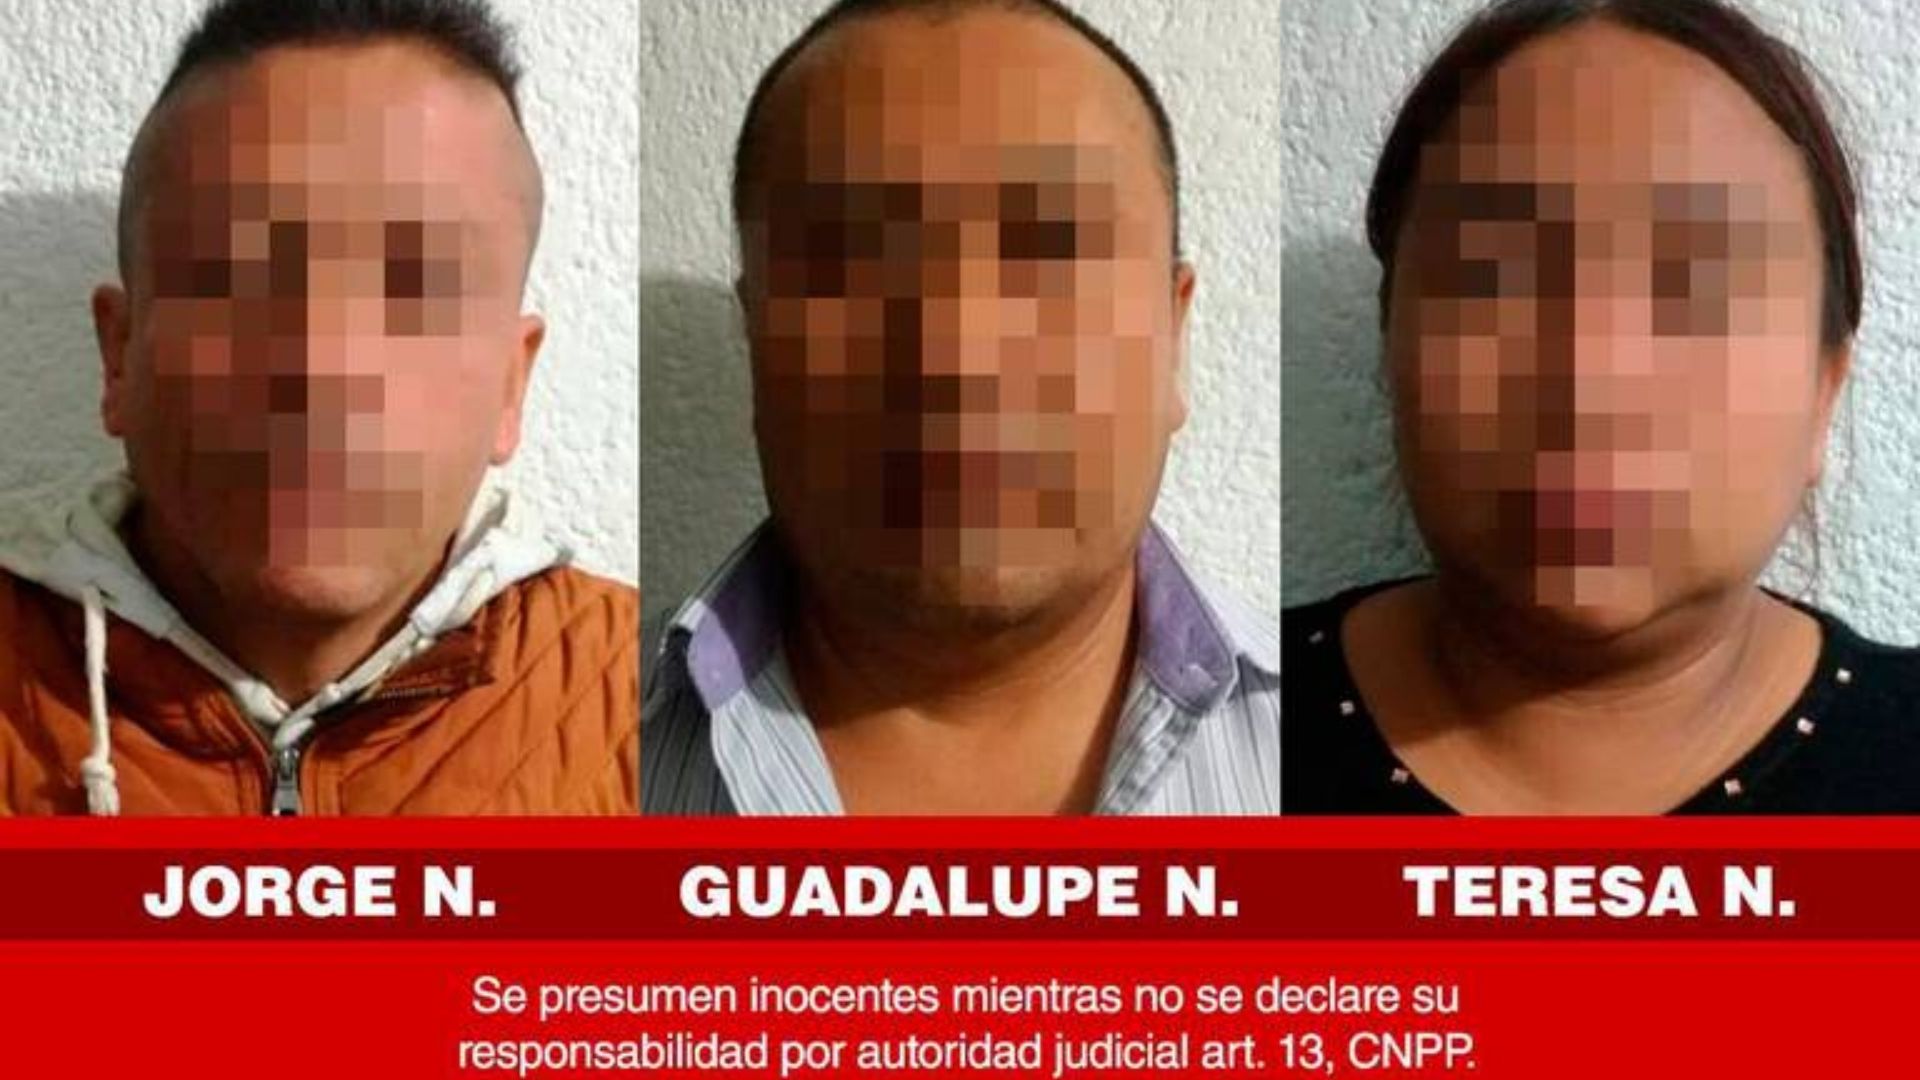 Las autoridades locales presentaron de esta manera a los tres presuntos secuestradores (Foto: Twitter)